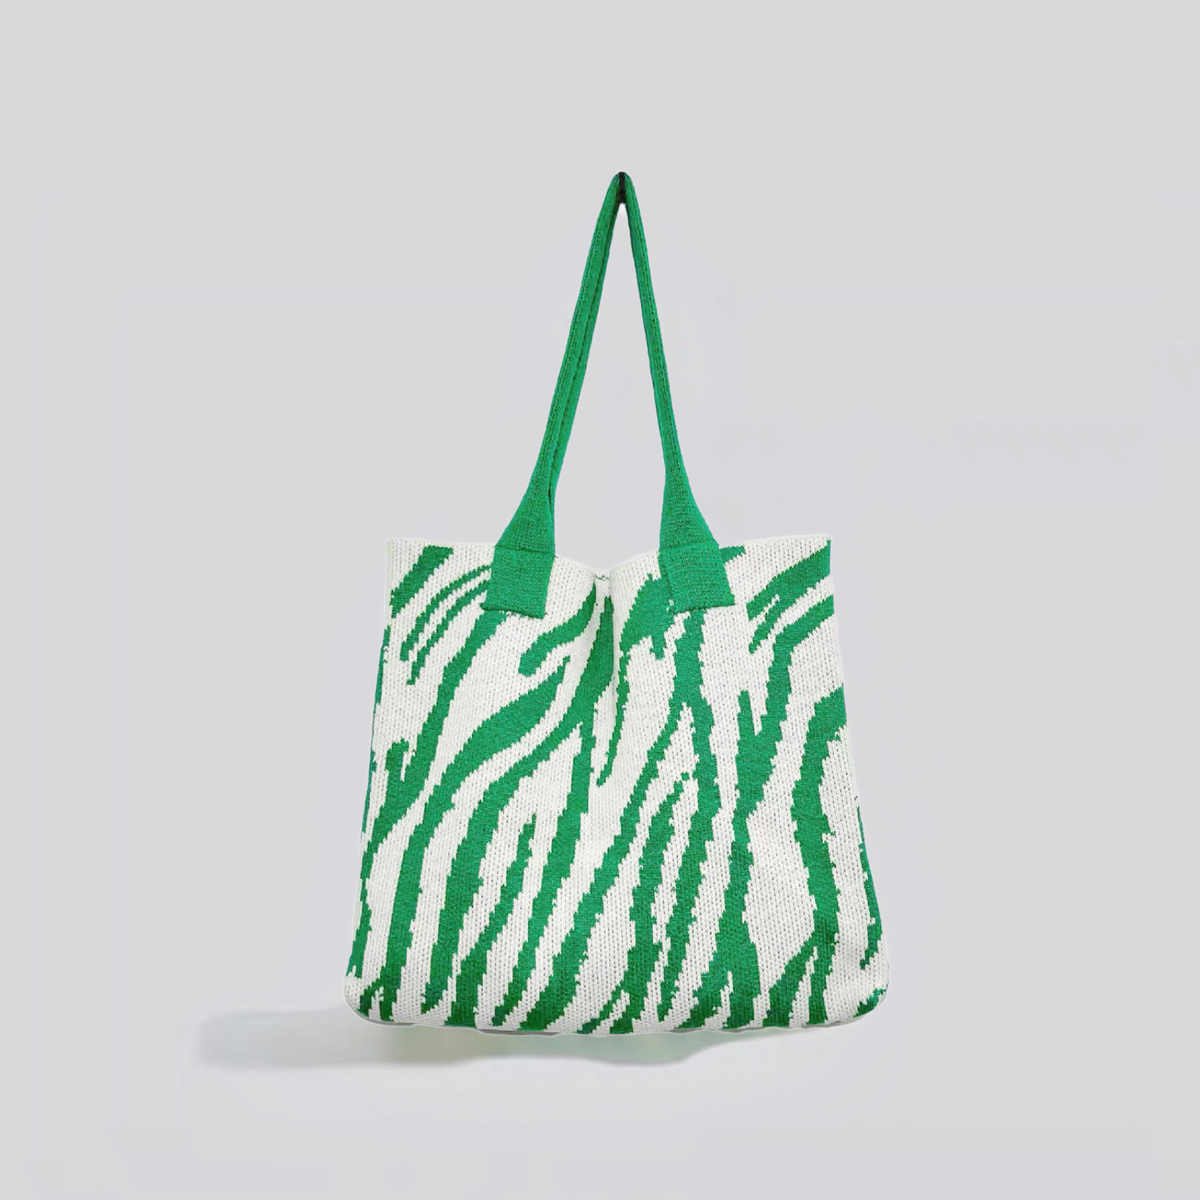 Gestrickte Einkaufstasche mit Zebra-Print - Grün Weiß - TascheGestrickte Einkaufstasche mit Zebra-Print - € - - Concept Frankfurt